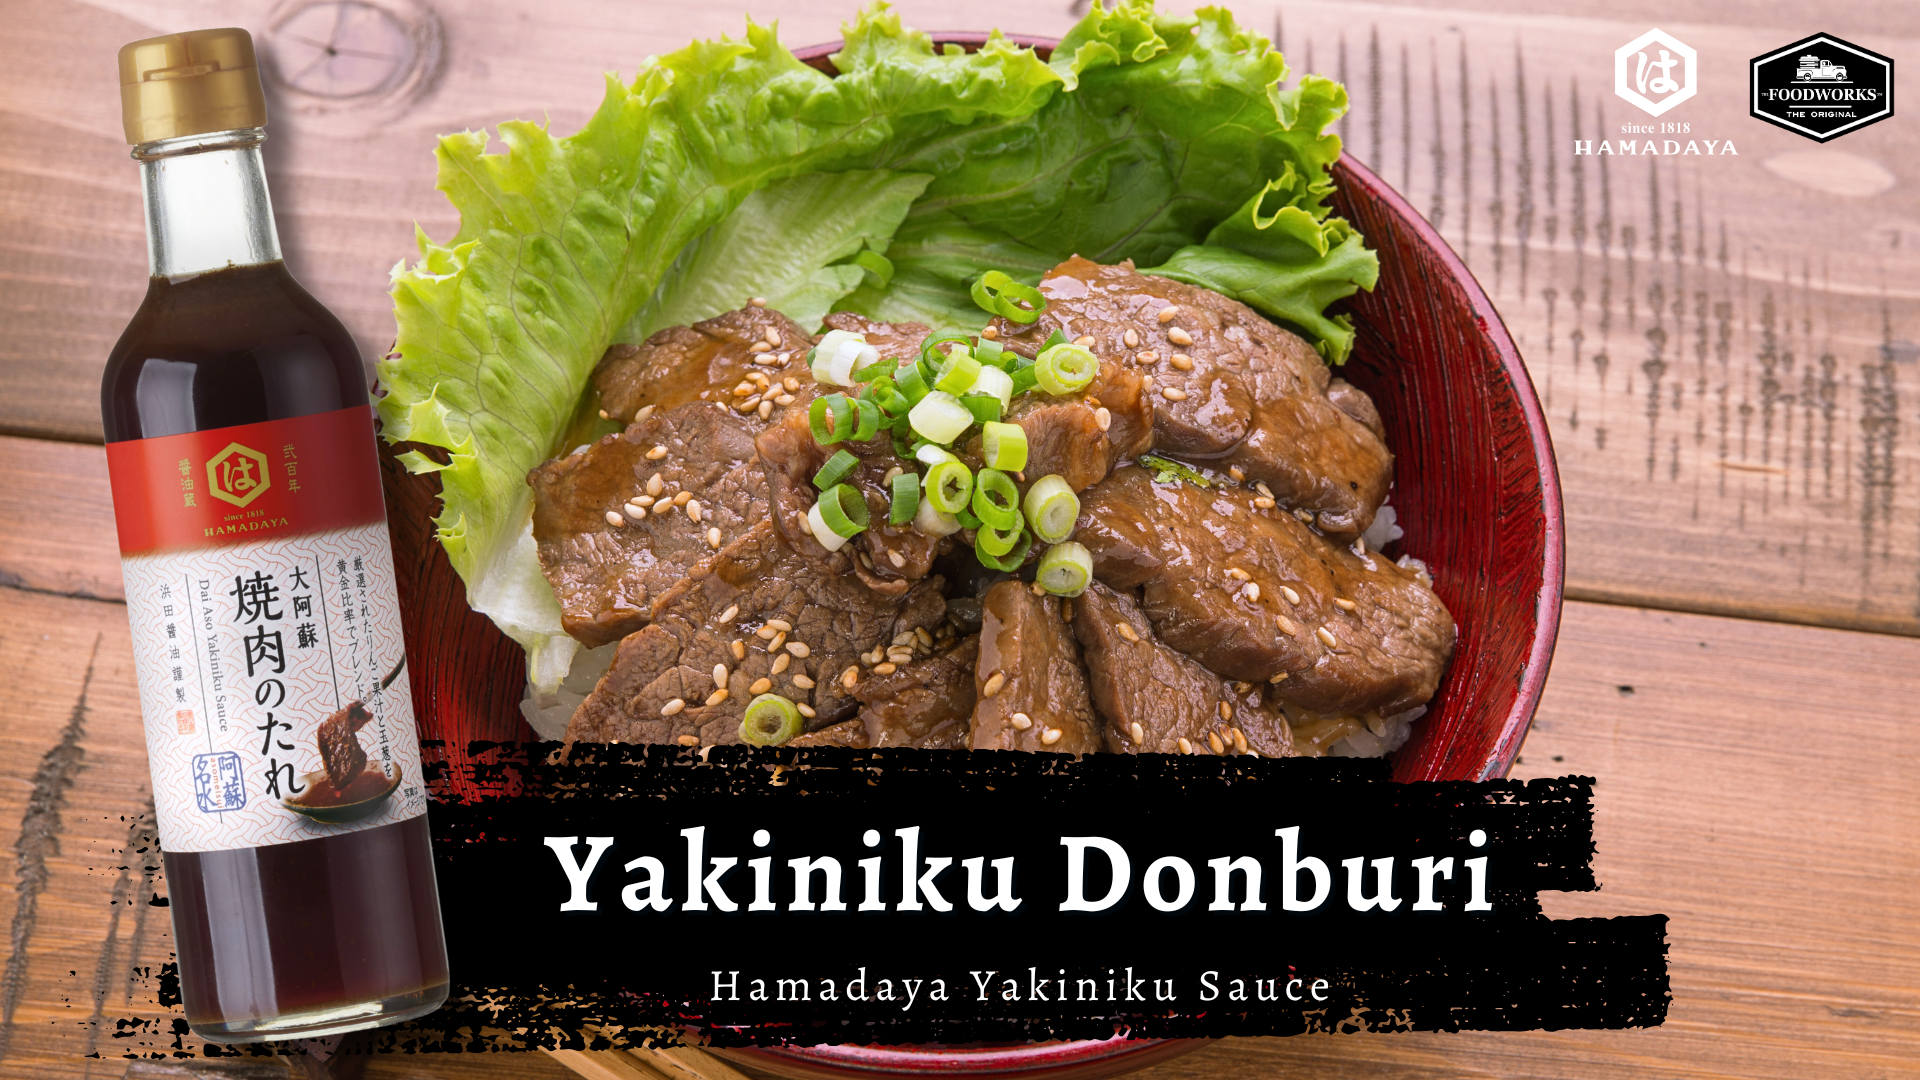 วิธีการทำข้าวยากินิคุ ดงบุริ (Yakiniku Donburi)